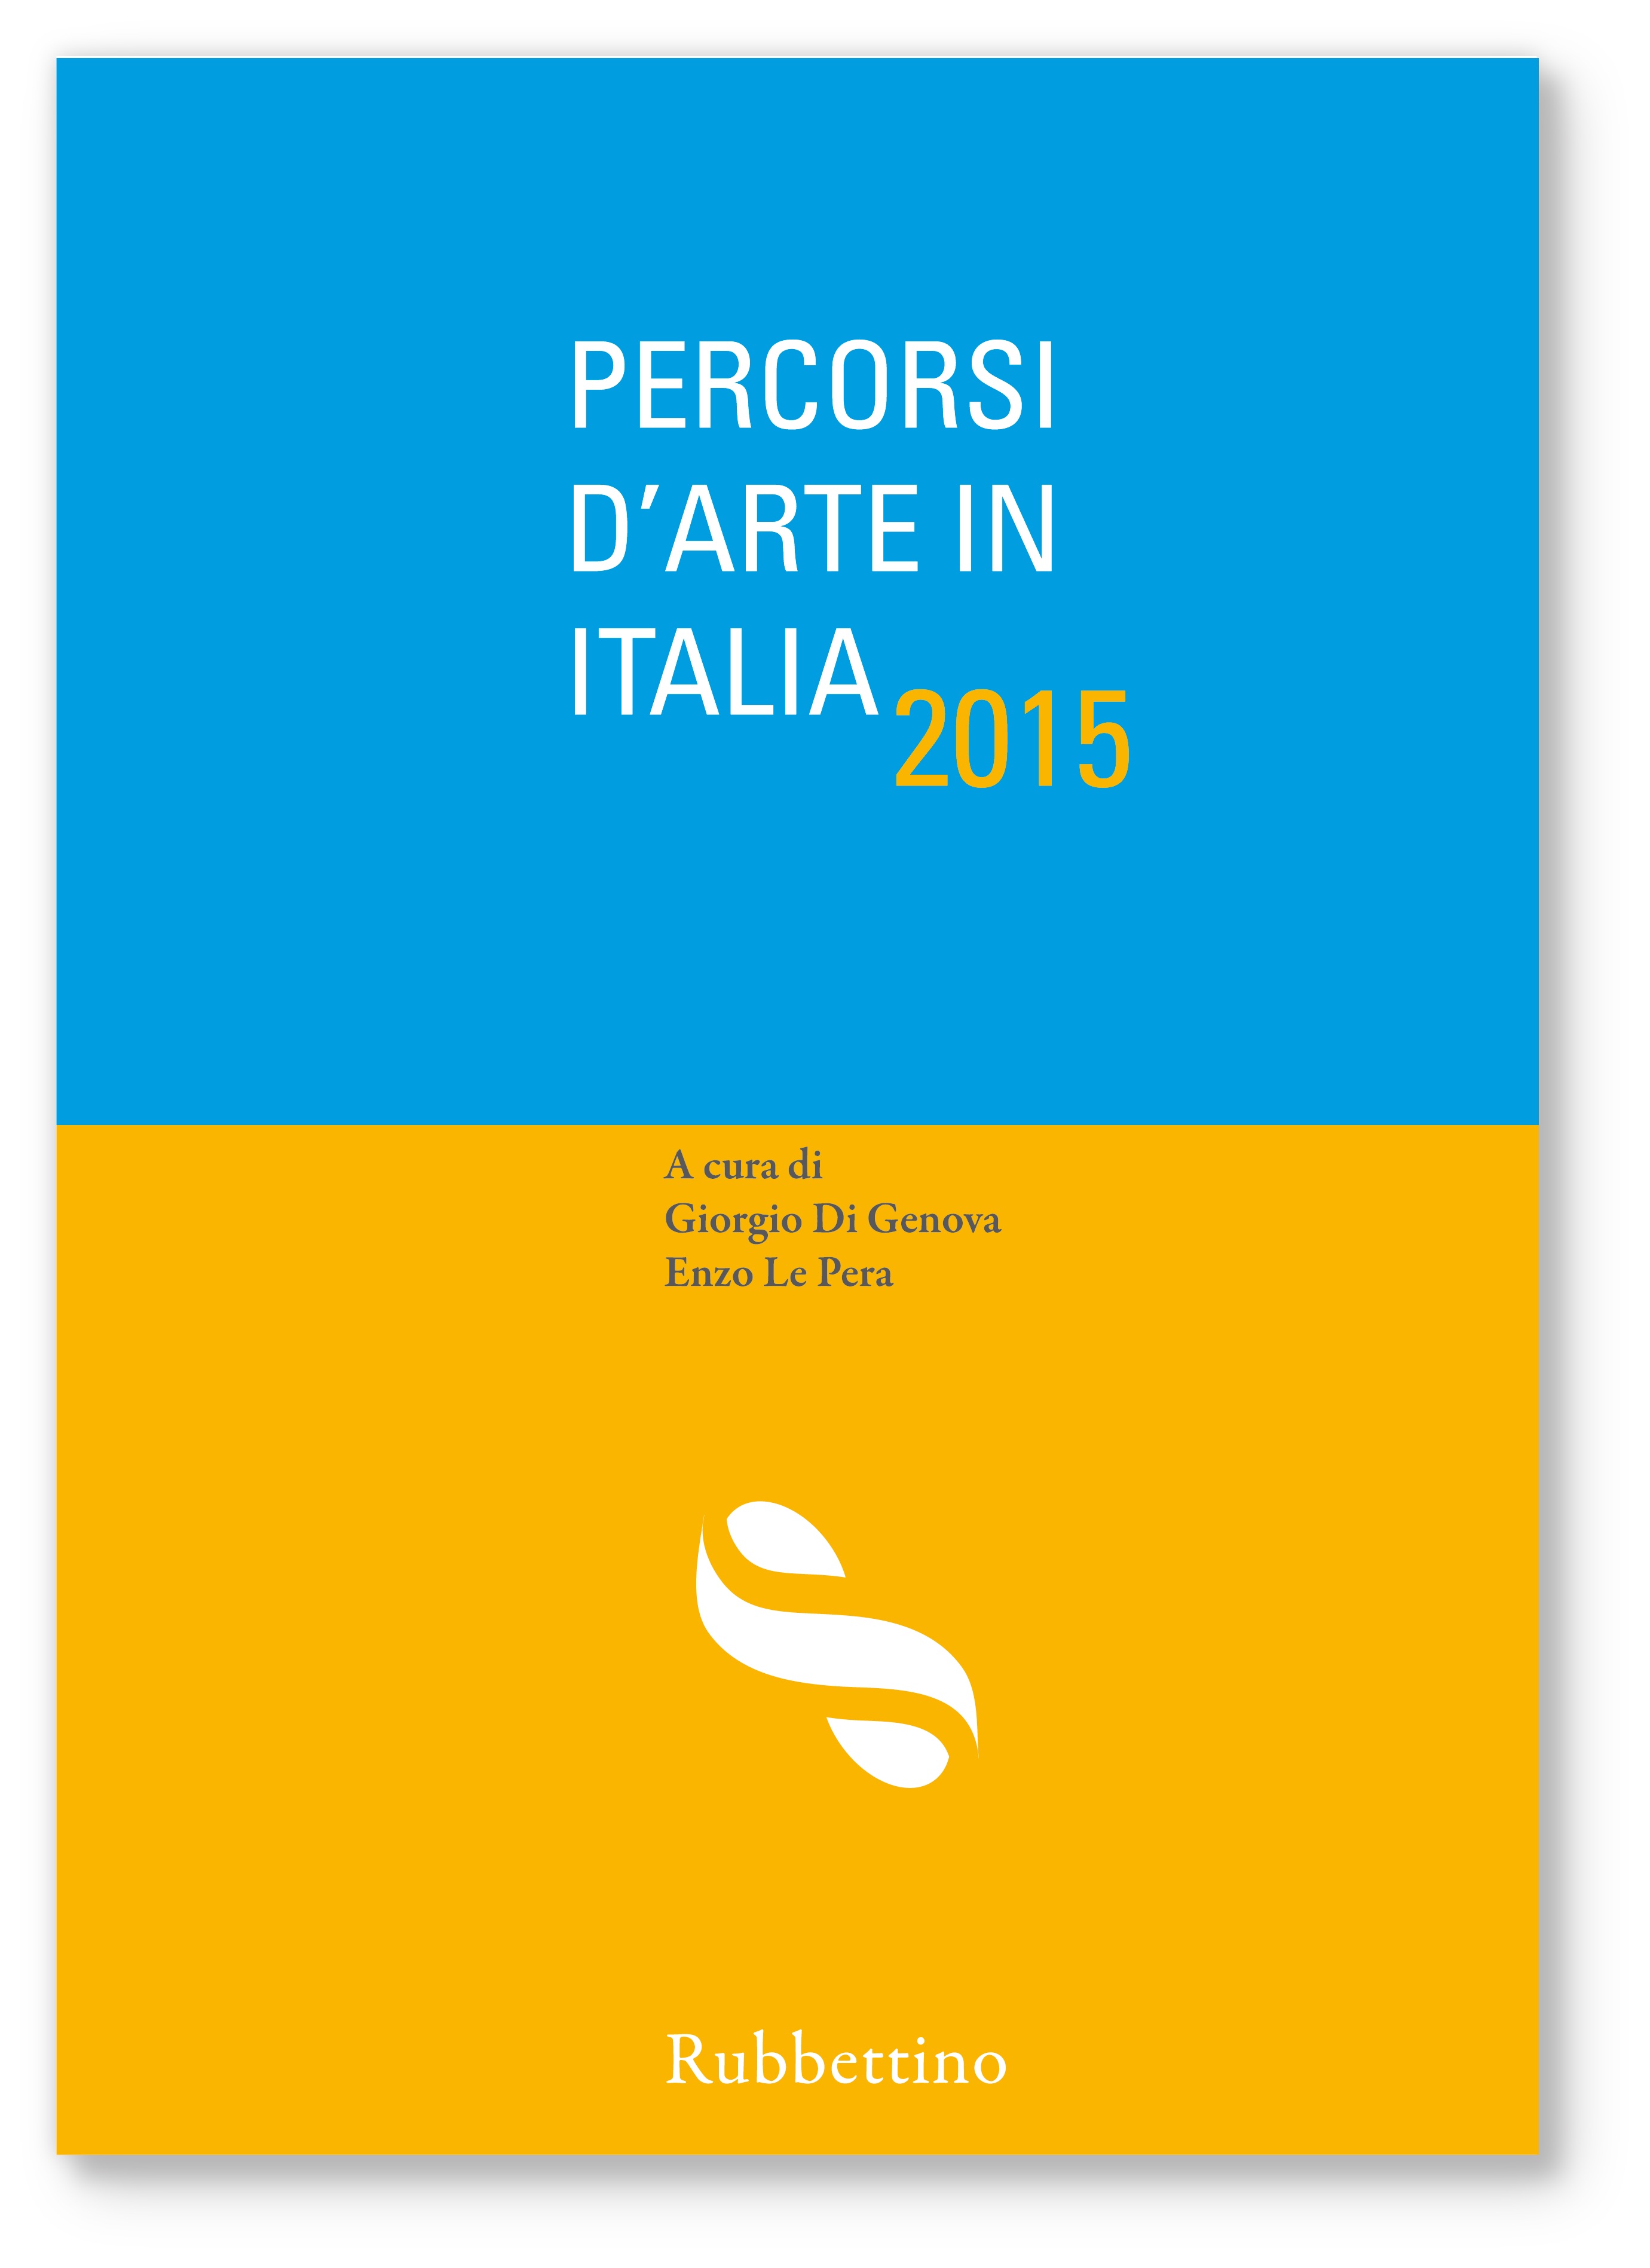 Percorsi d'Arte in Italia 2015